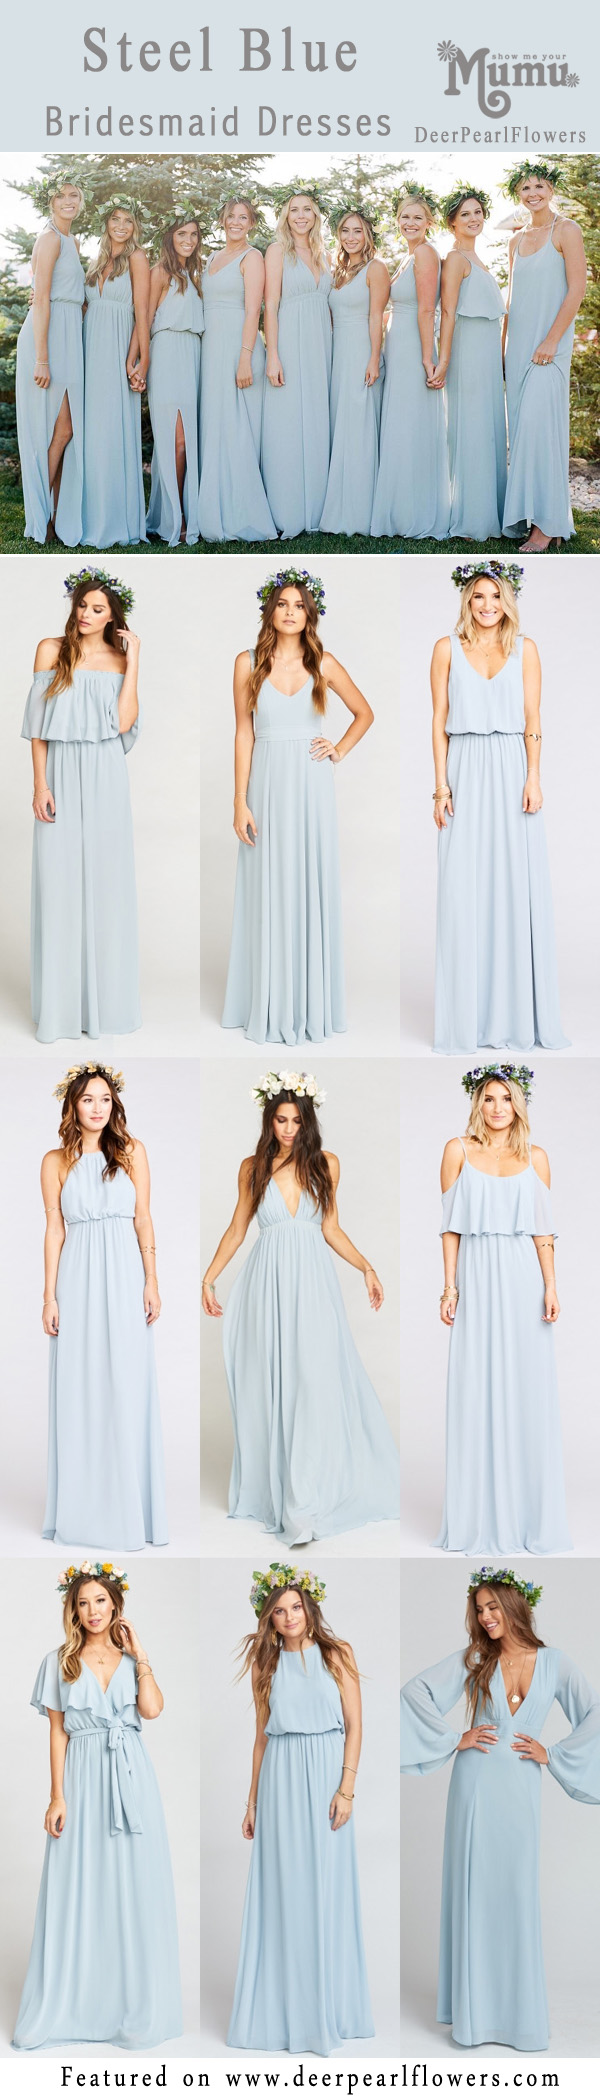 steel blue bridesmaid dresses uk